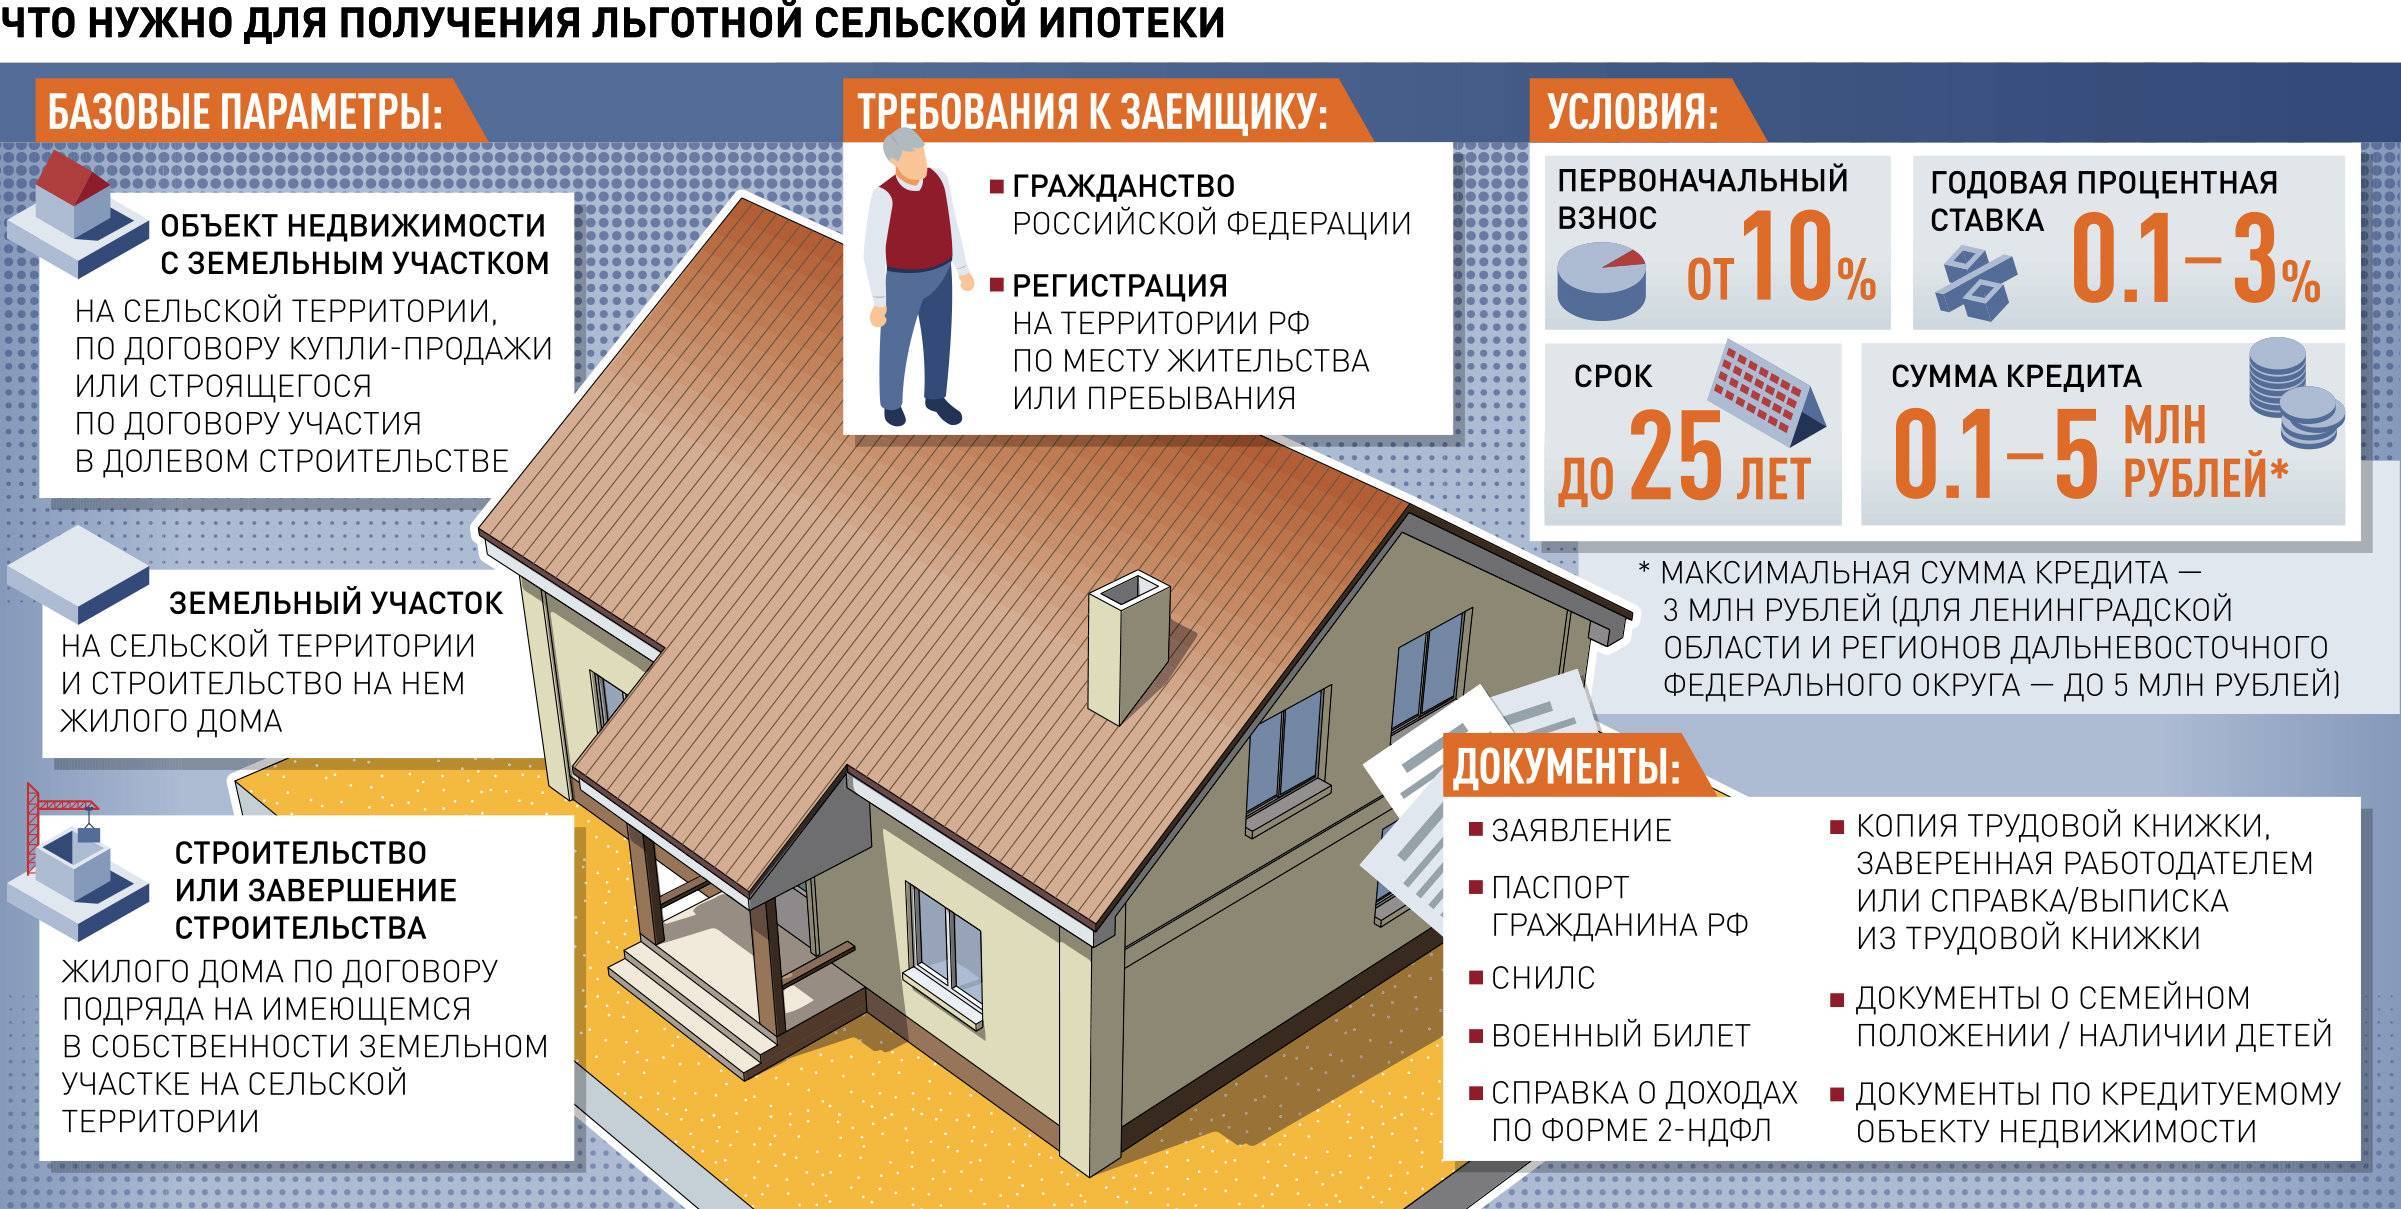 Ипотека под 0,1%: донстрой и втб субсидируют кредитную ставку для покупателей квартир - realto.ru